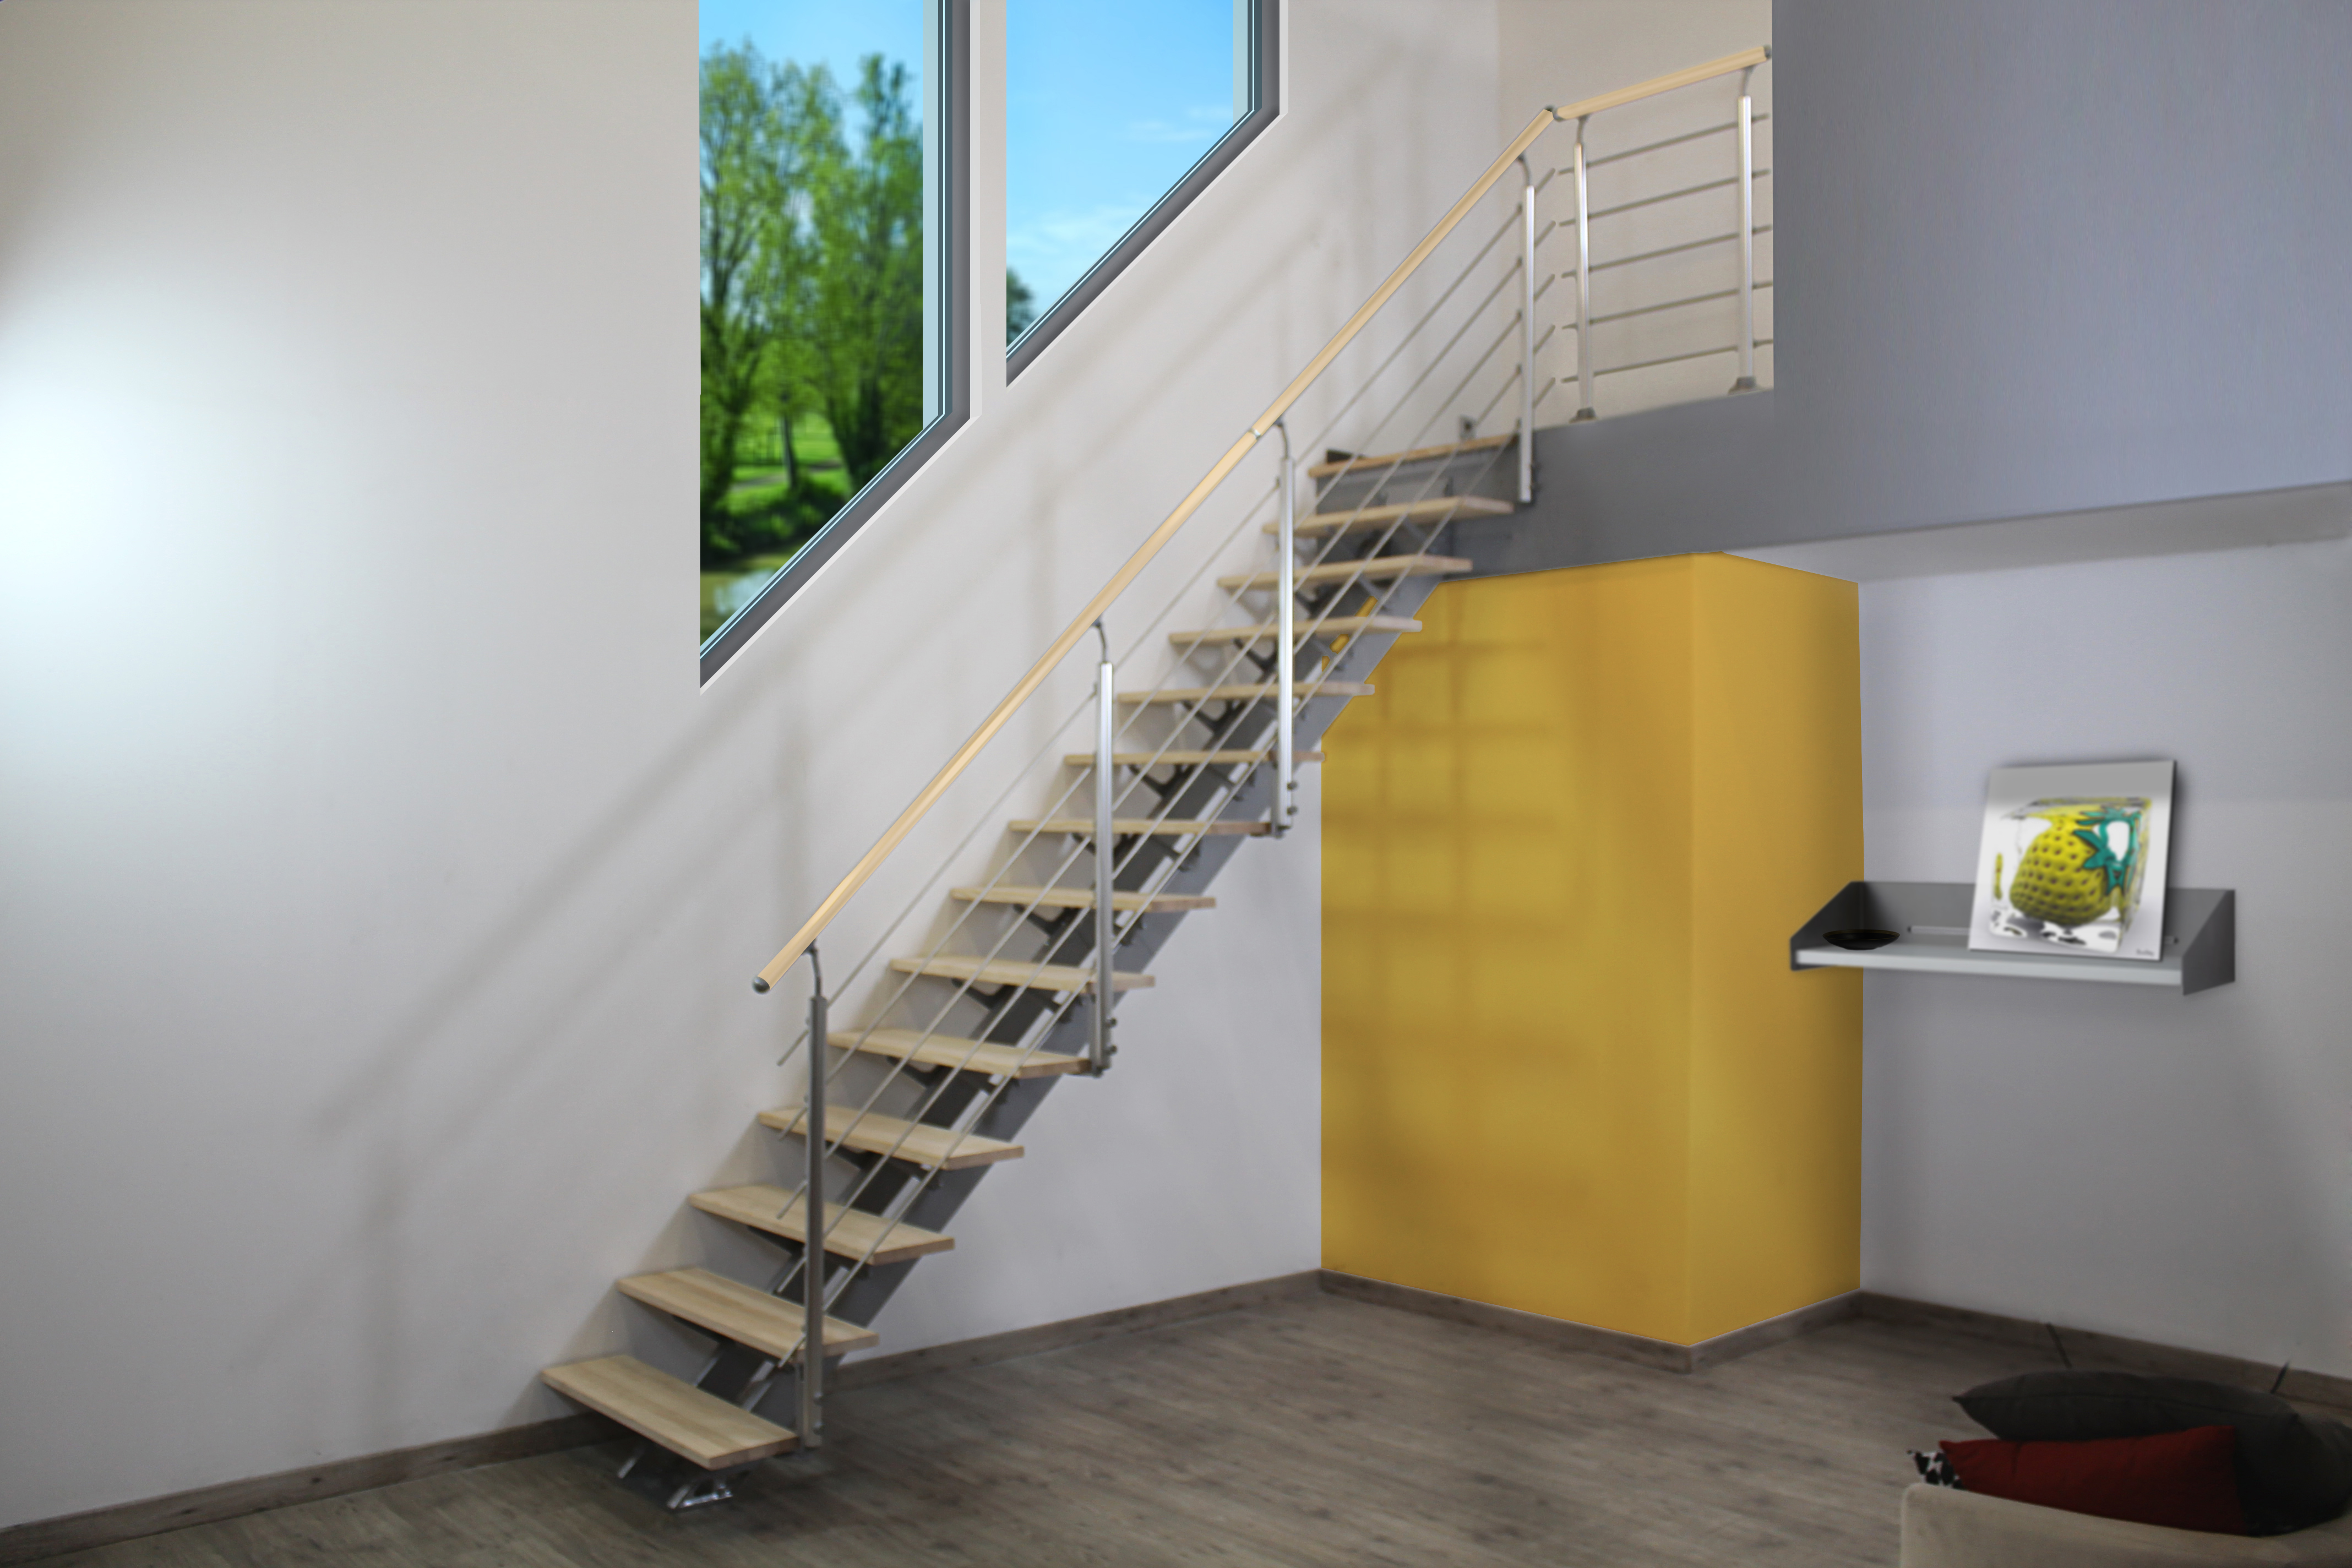 Escalera recta doble viga uso interior ancho total 95cm acabado gris/pino/pino